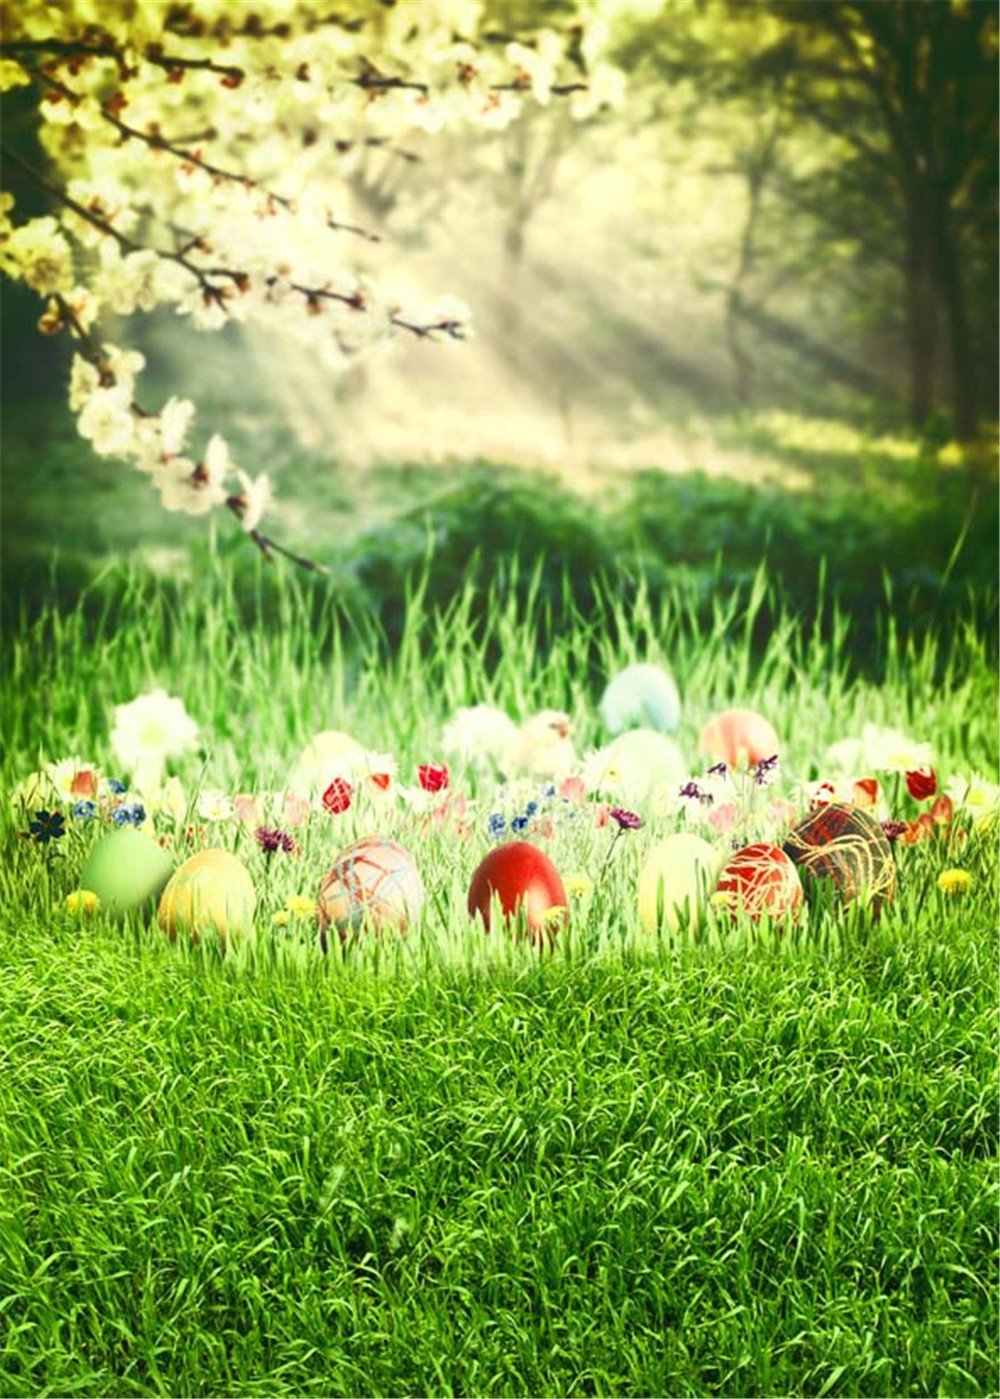 숲을 통해 햇빛 Bokeh 사진 배경 봄 인쇄 배 꽃 녹색 잔디 부활절 달걀 아기 신생아 사진 촬영 배경